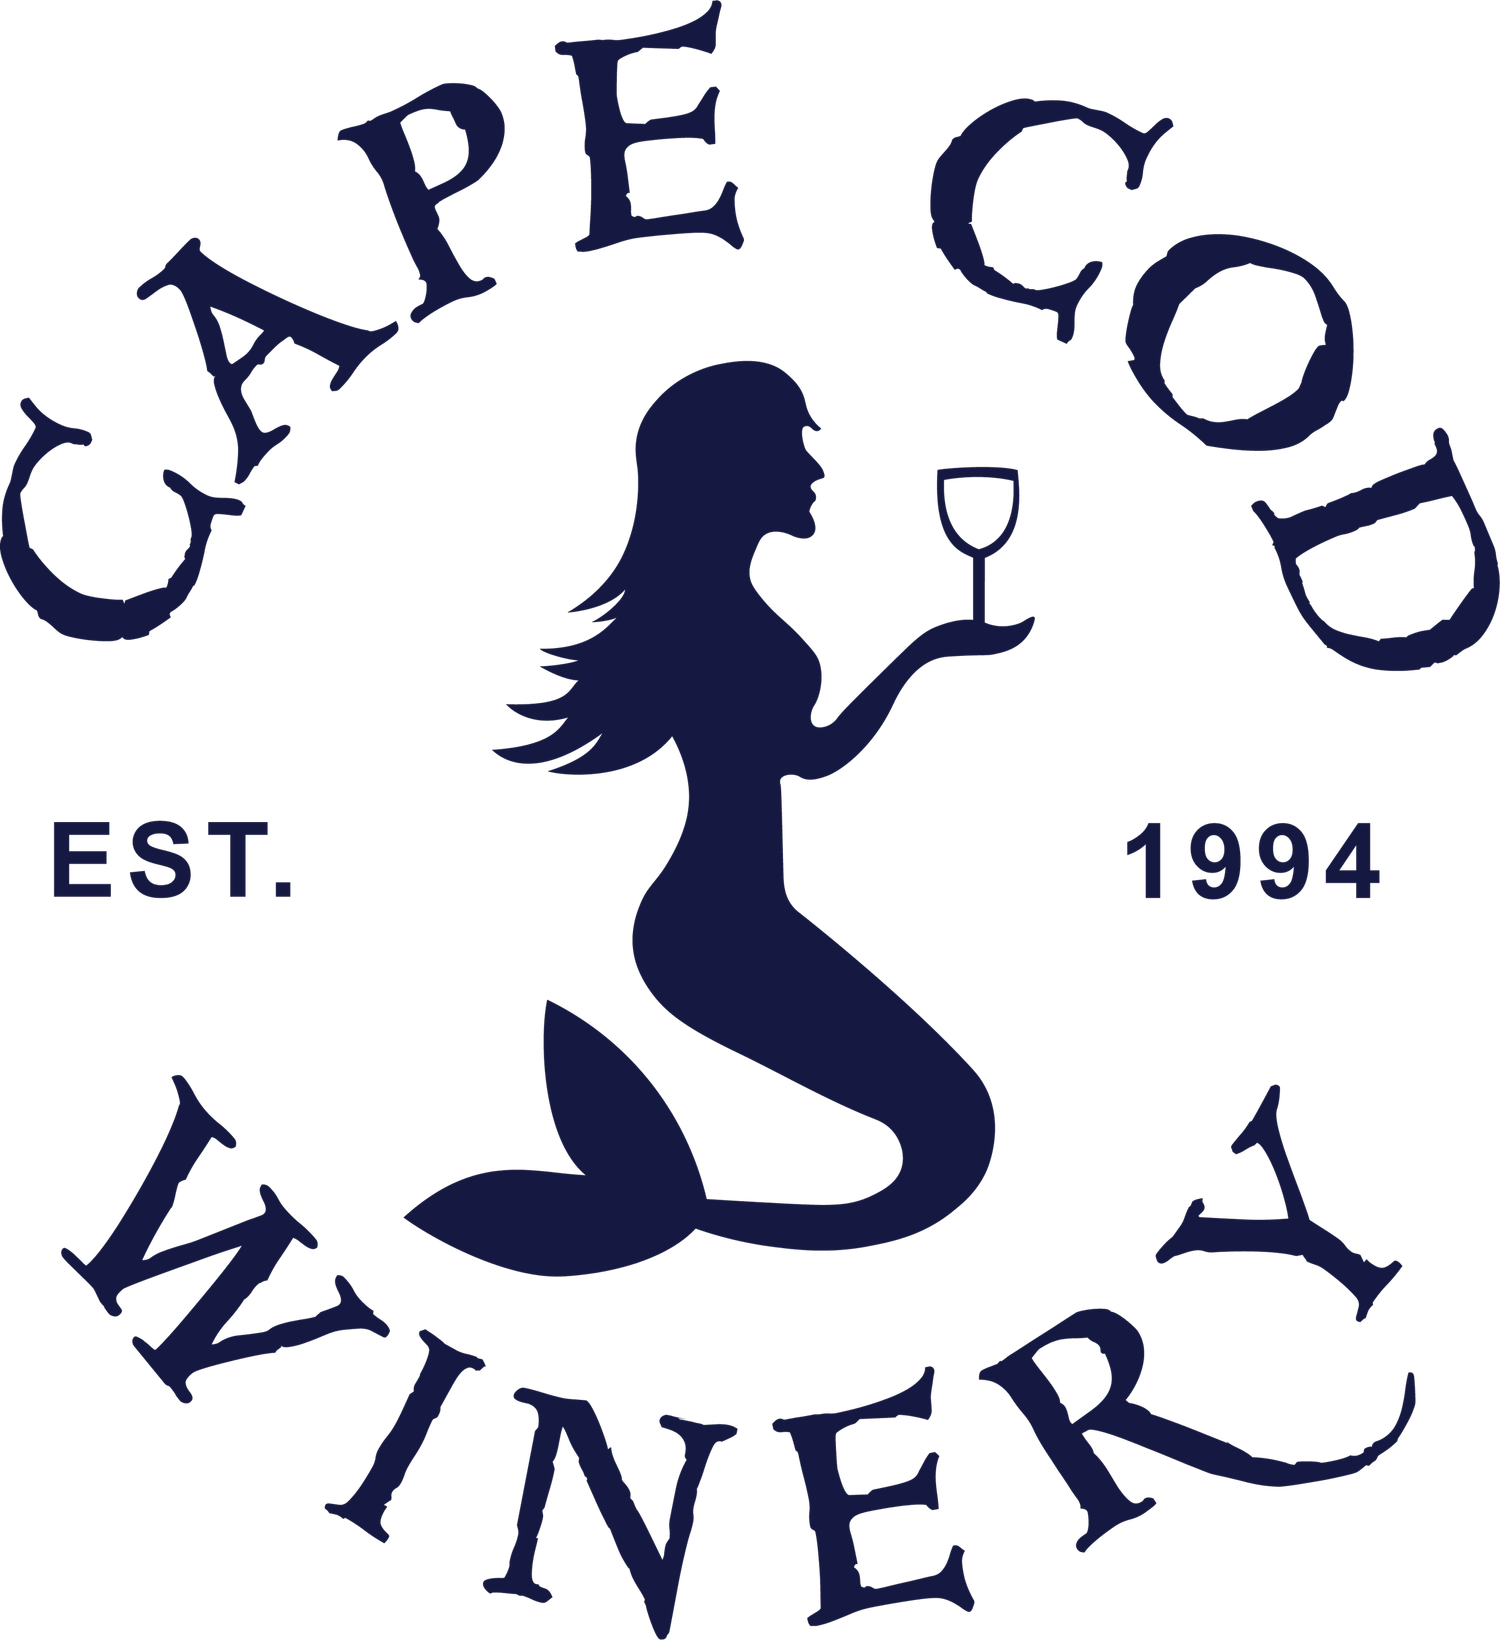 Cape Cod Winery